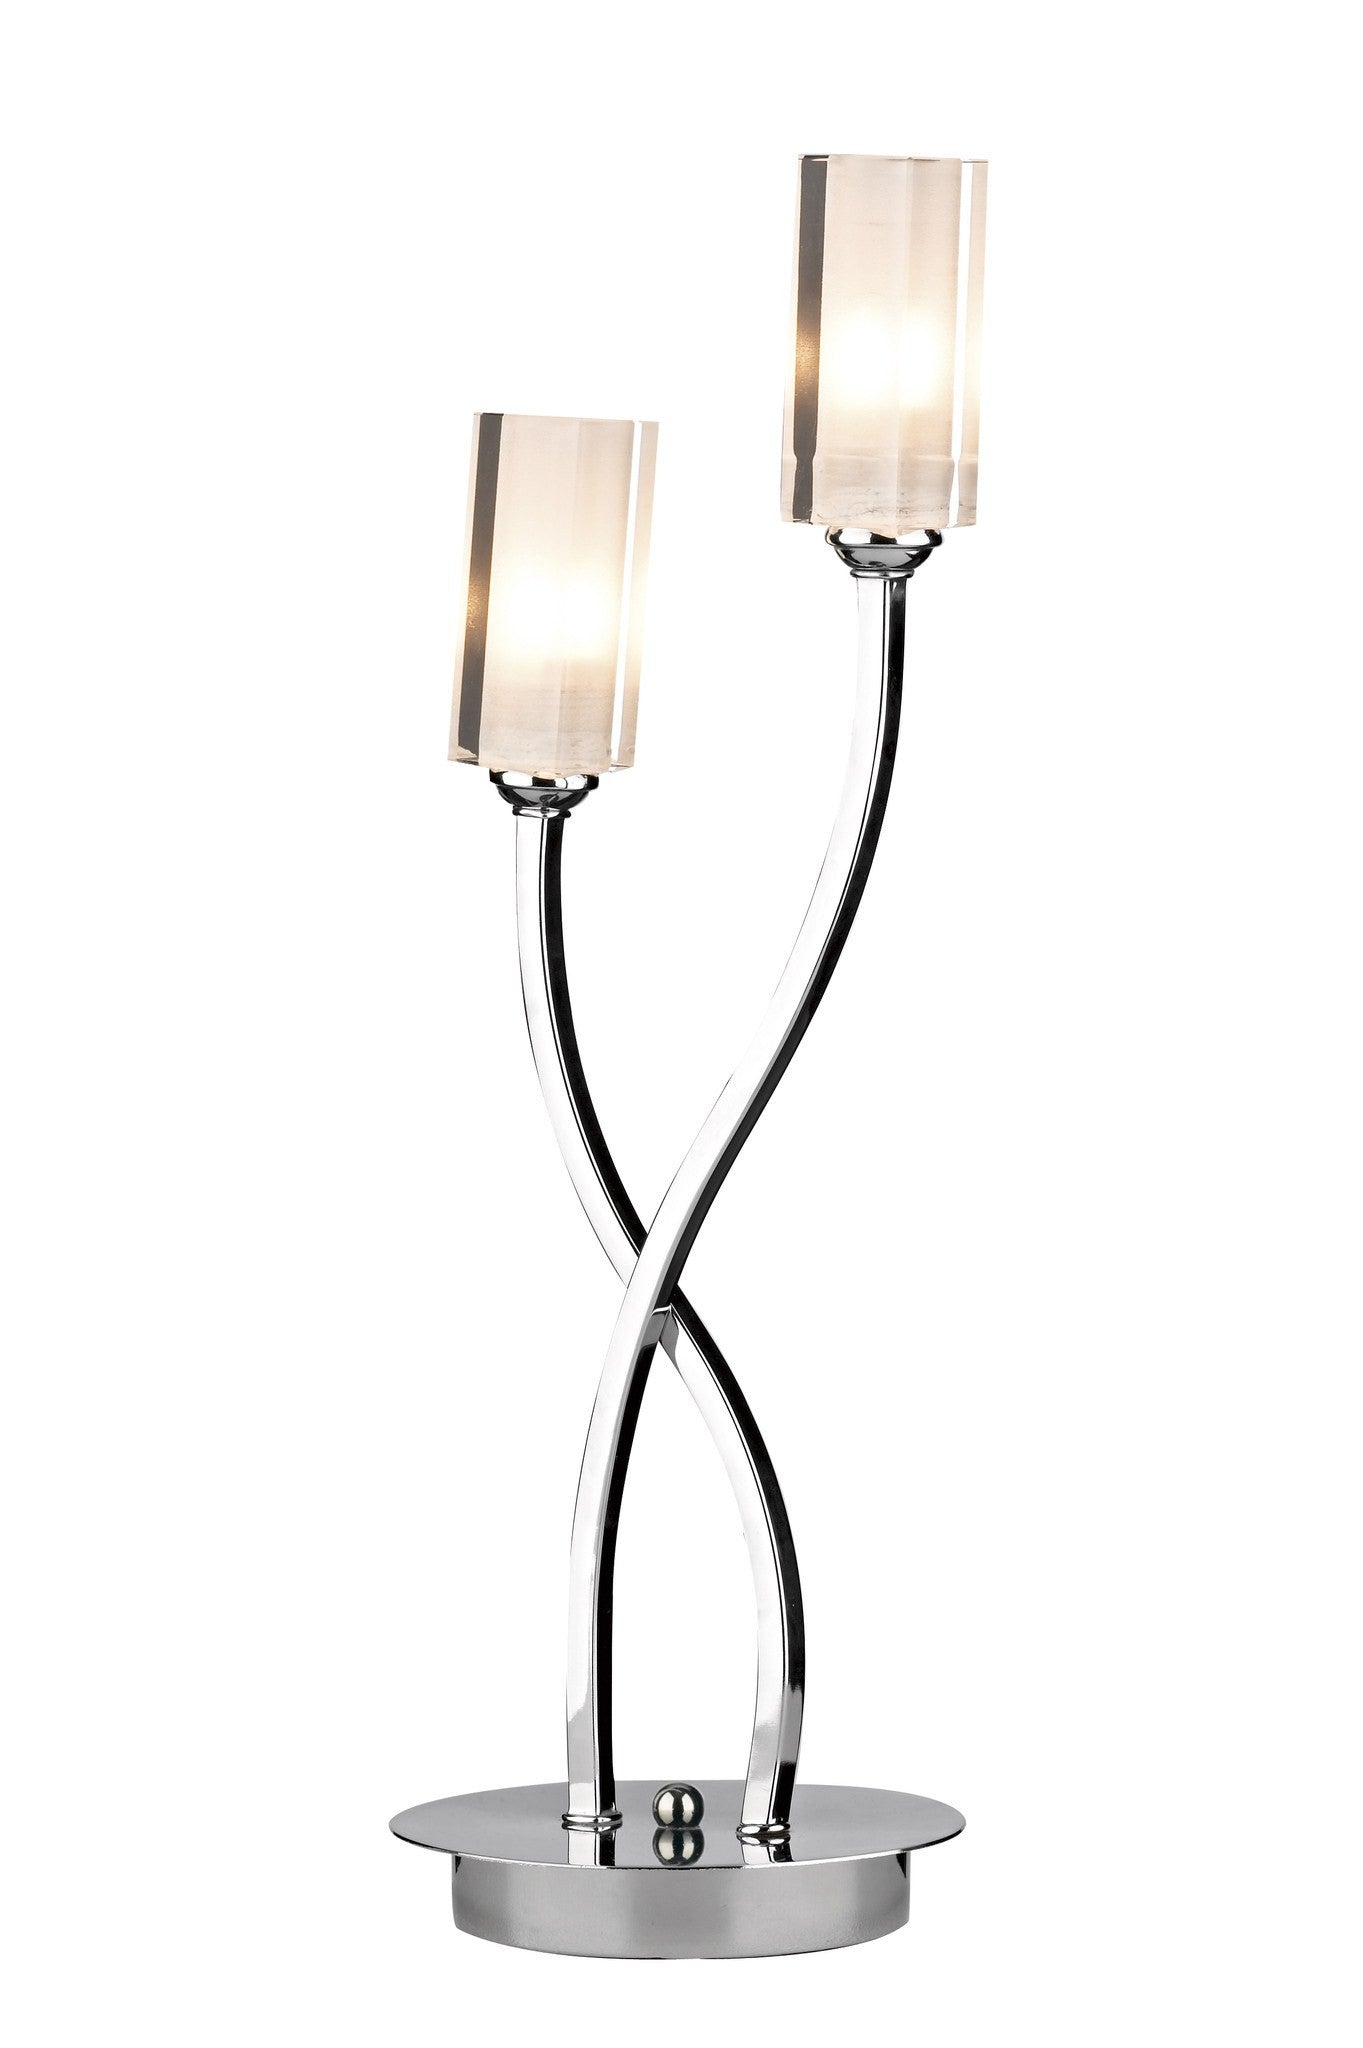 Morgan Polished Chrome Table Lamp - London Lighting - 1